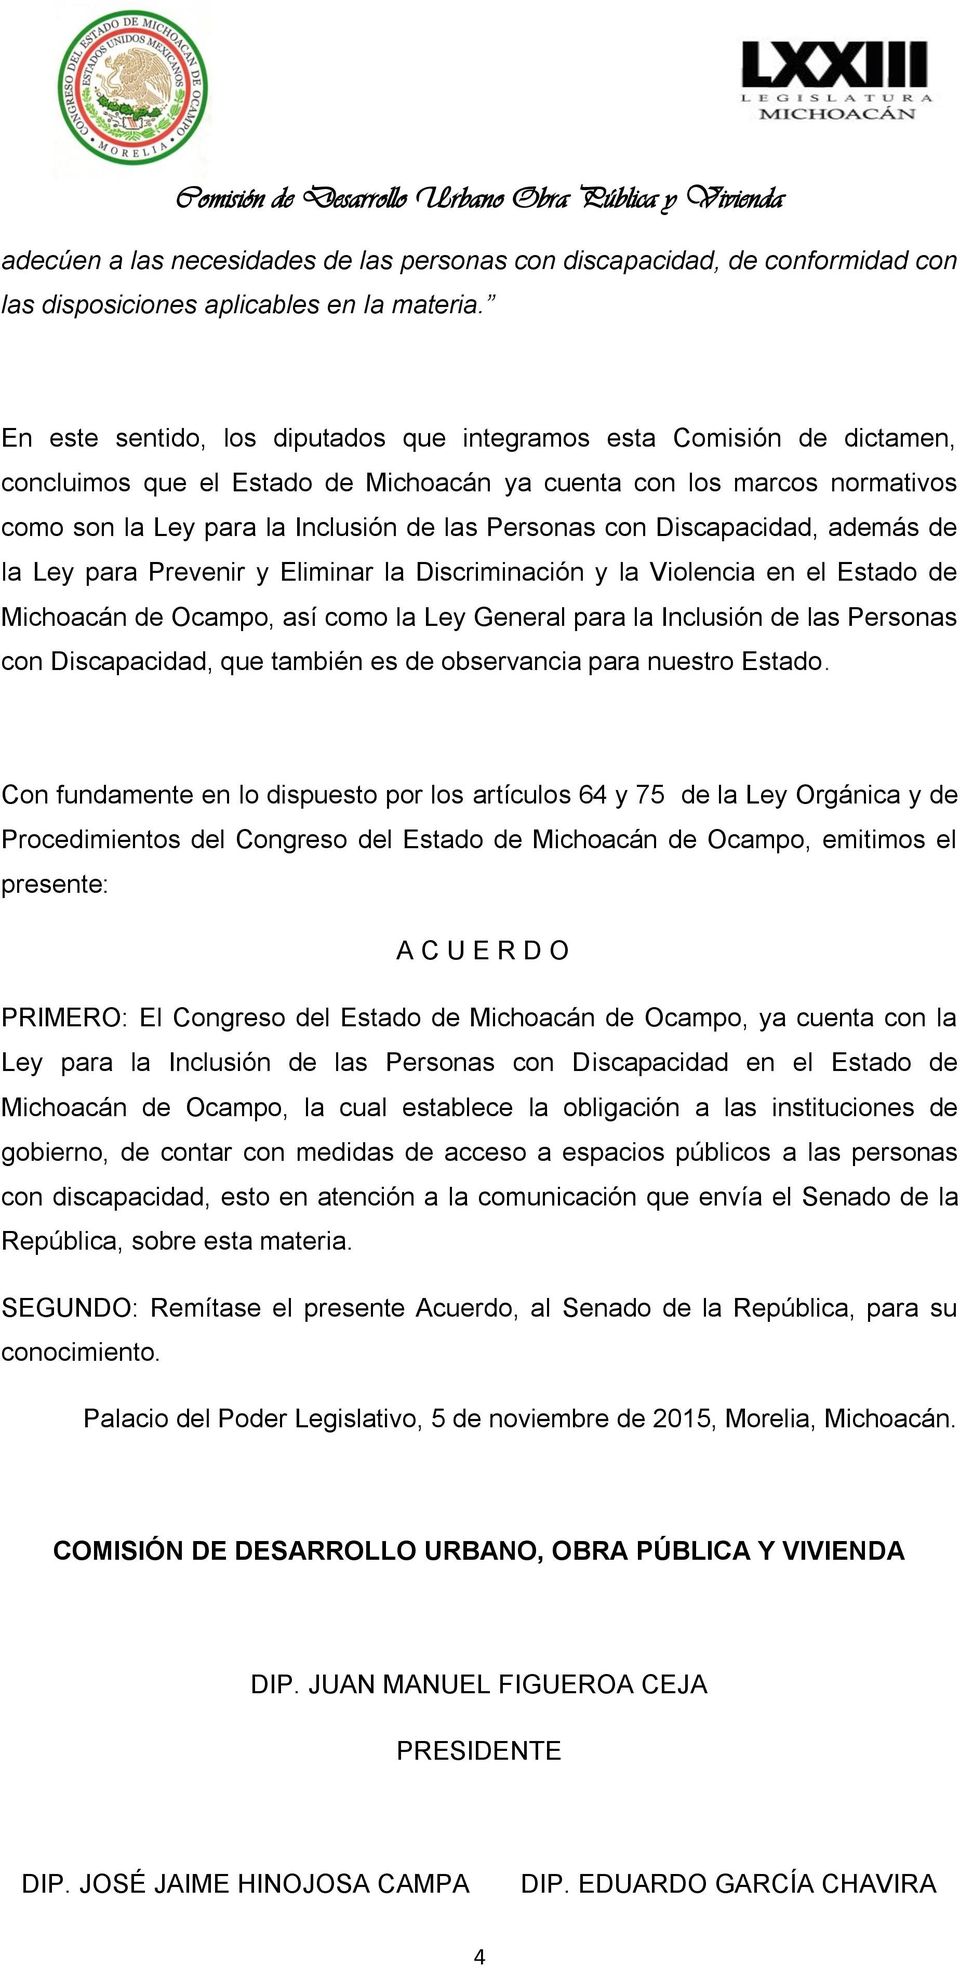 con Discapacidad, además de la Ley para Prevenir y Eliminar la Discriminación y la Violencia en el Estado de Michoacán de Ocampo, así como la Ley General para la Inclusión de las Personas con